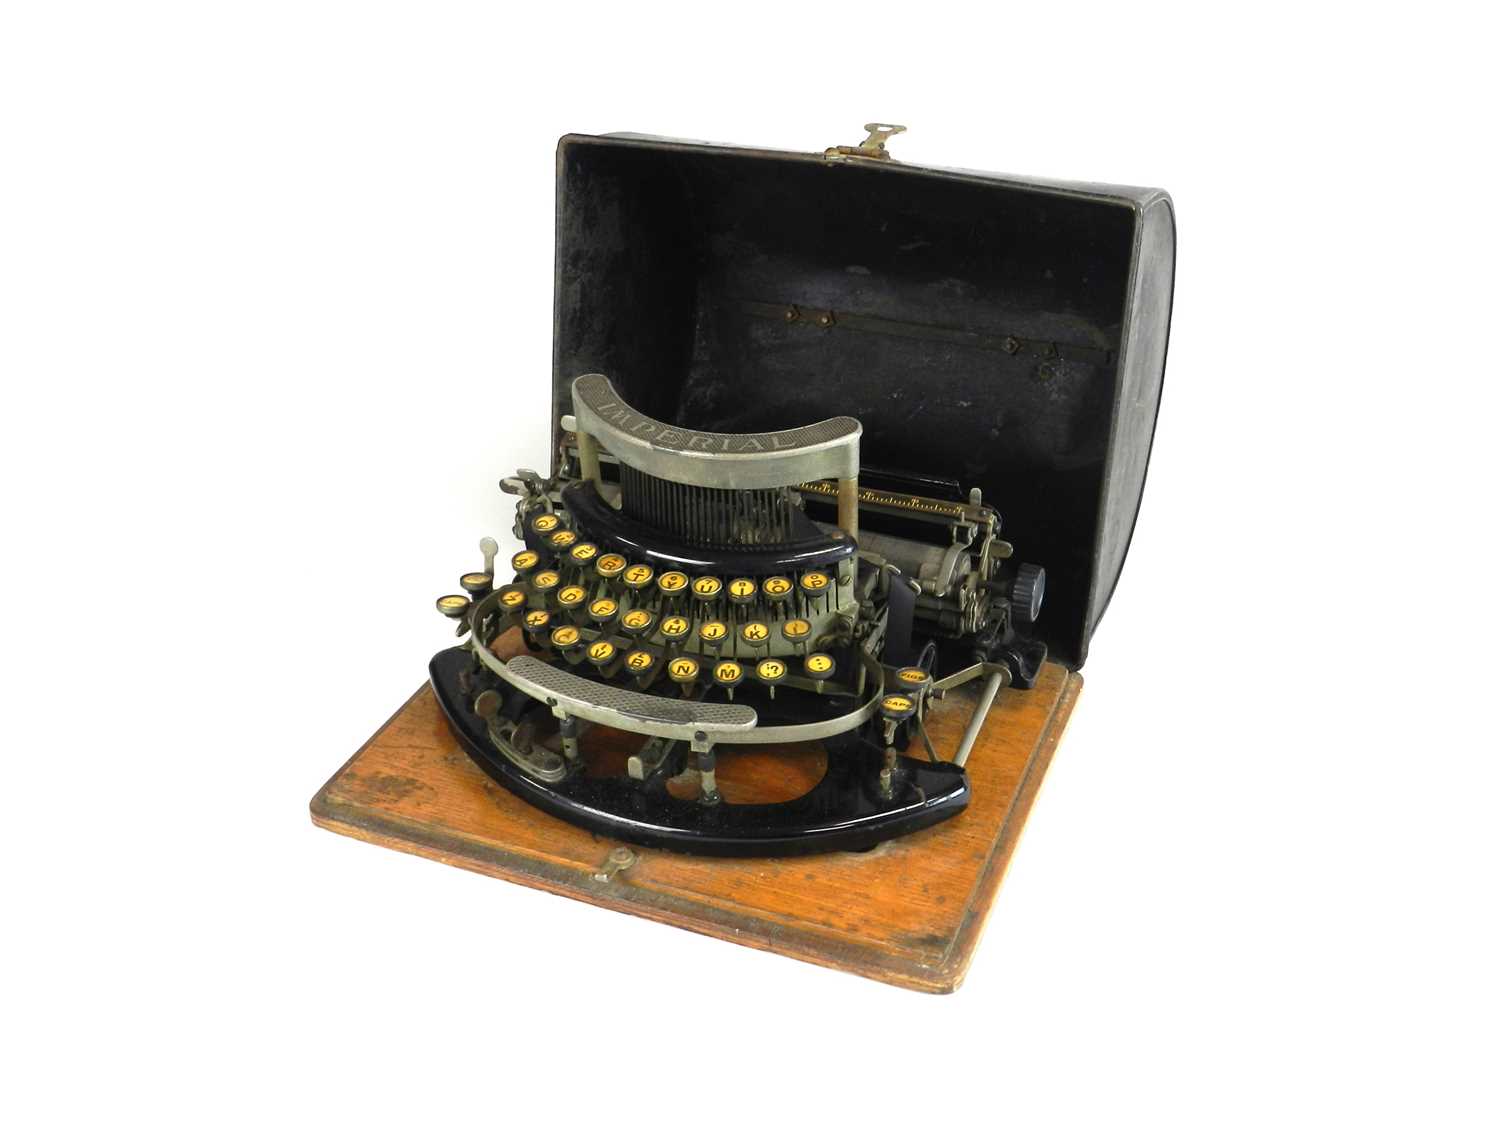 An Imperial Model-B typewriter